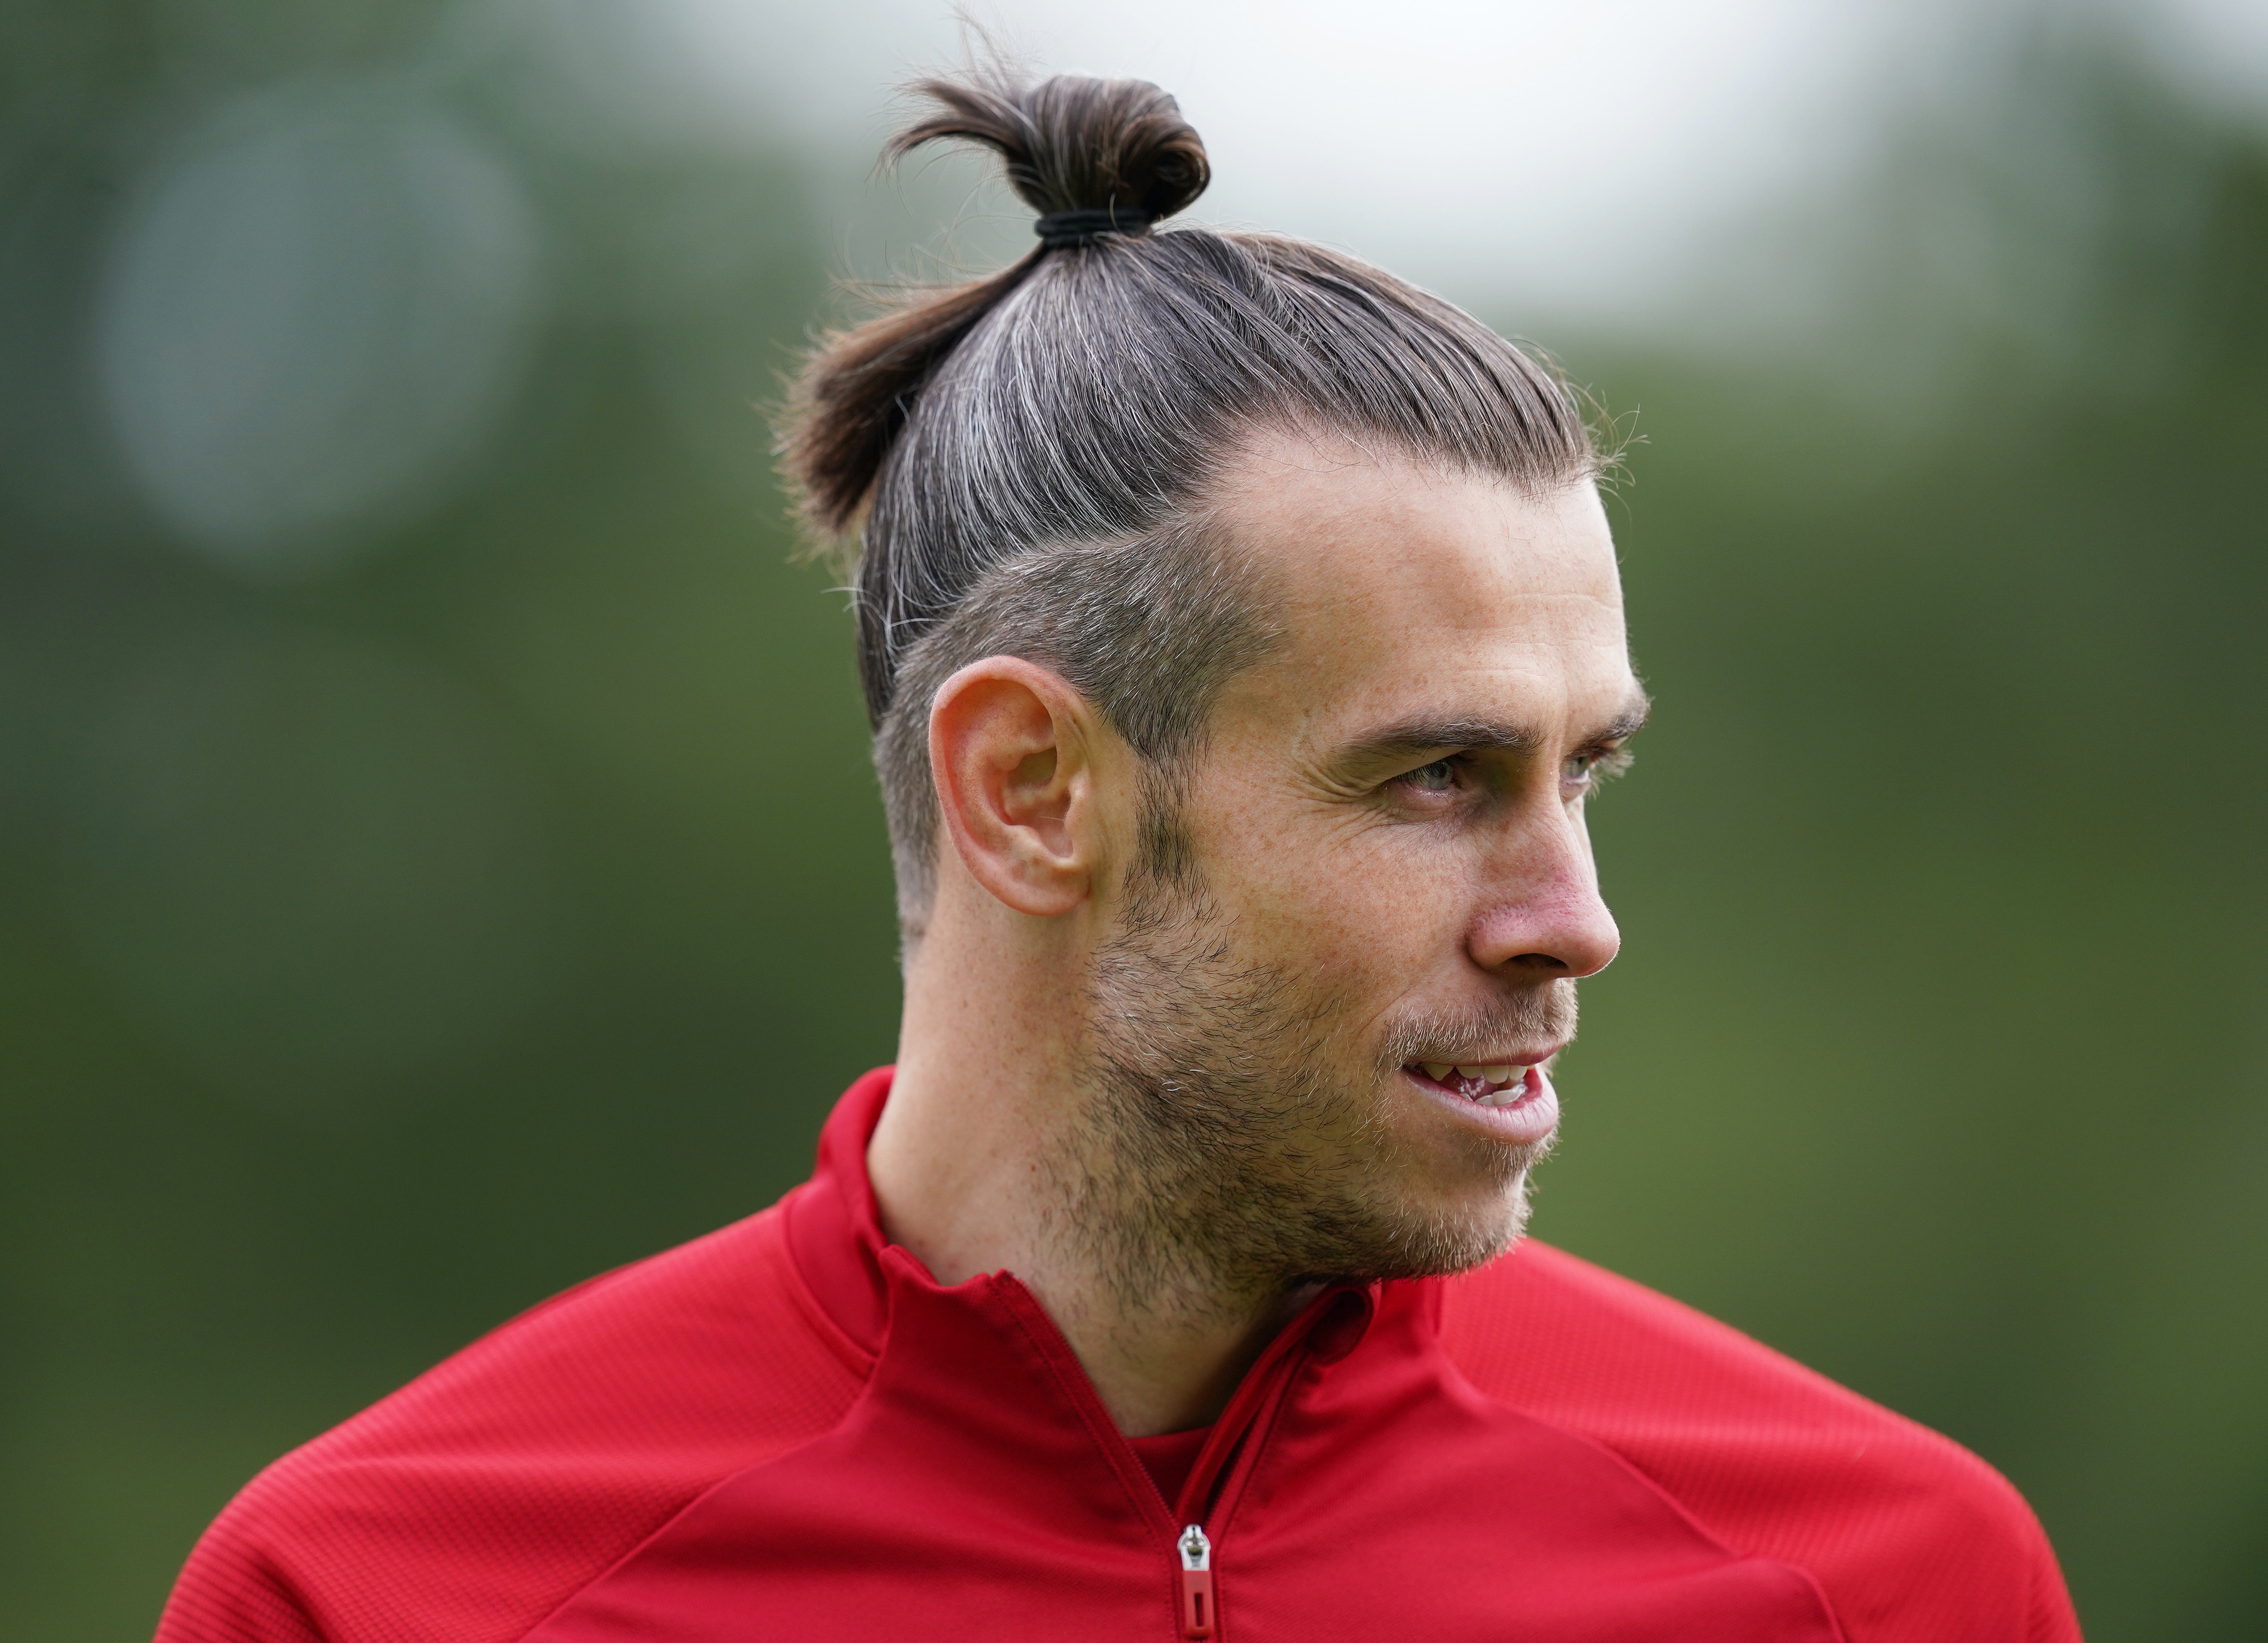 Gareth Bale: Long Hair With Man Bun And Undercut